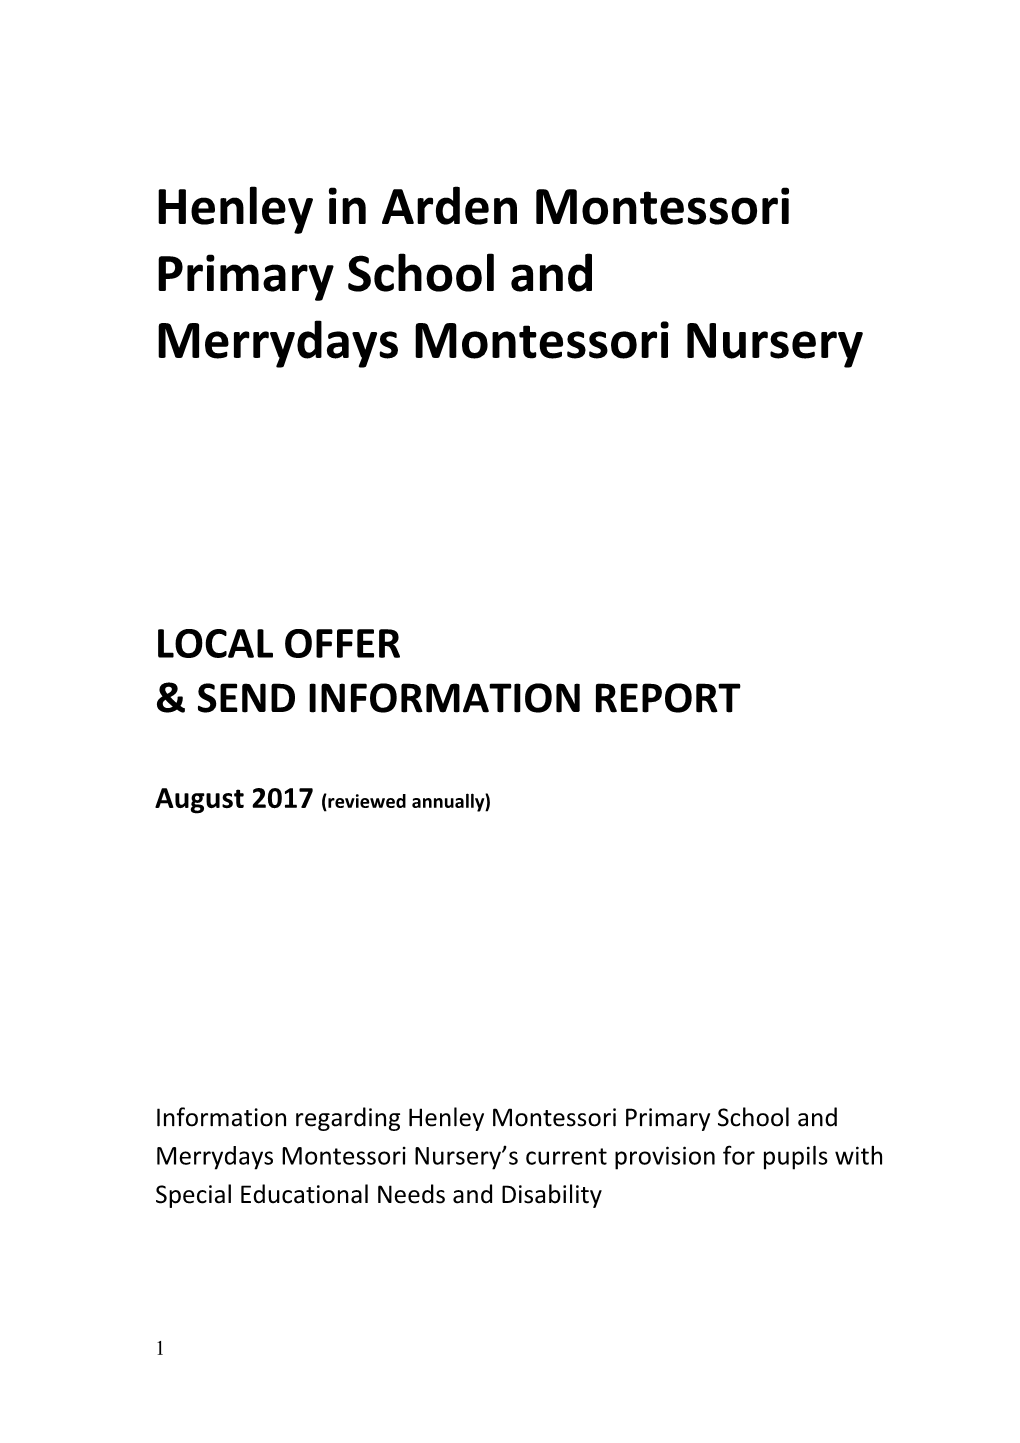 Henley Montessori Primary School